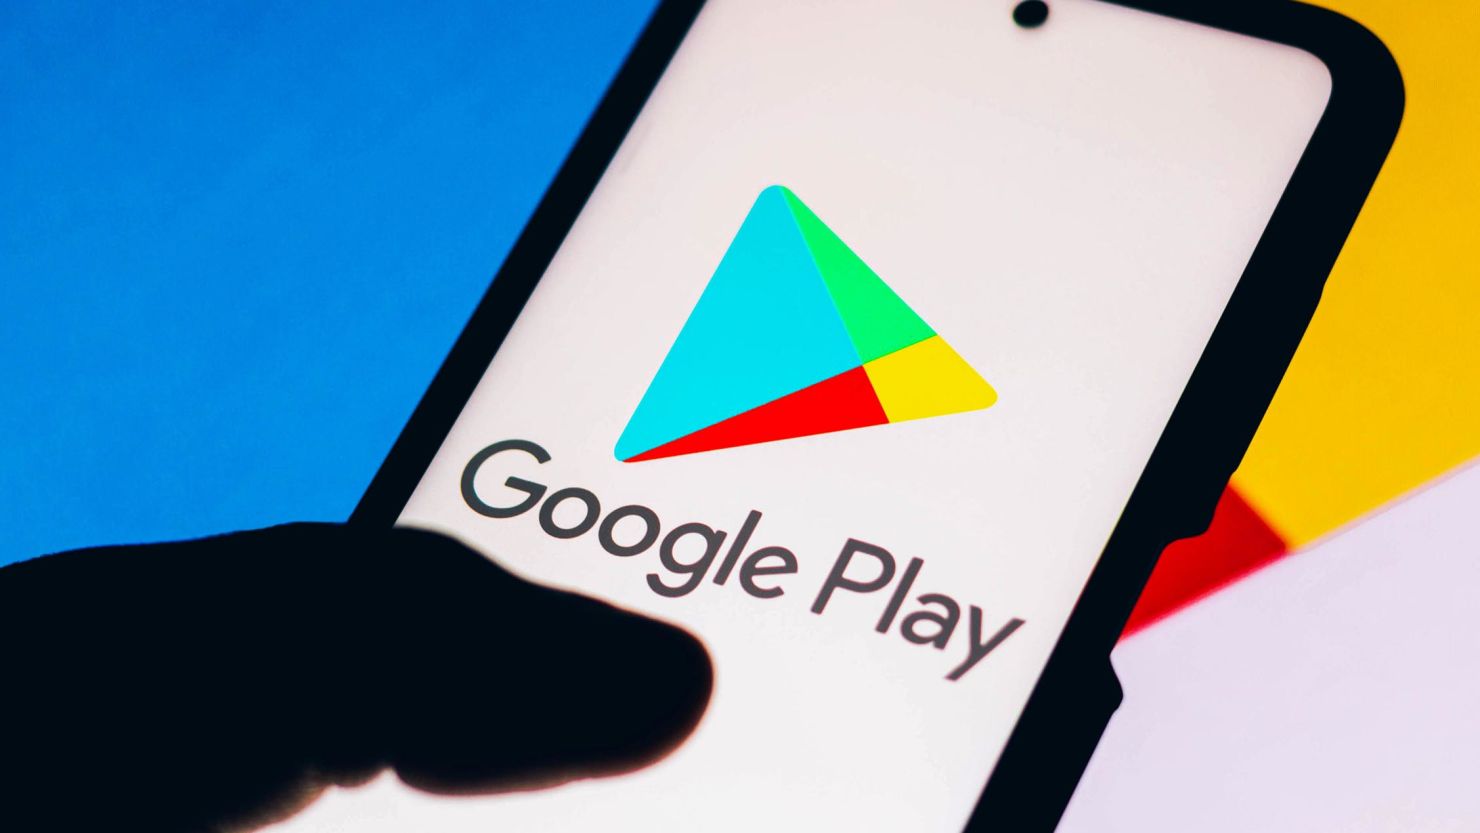 Google Play Store introduce la nueva opción de pago "Pedir a otra persona que pague"